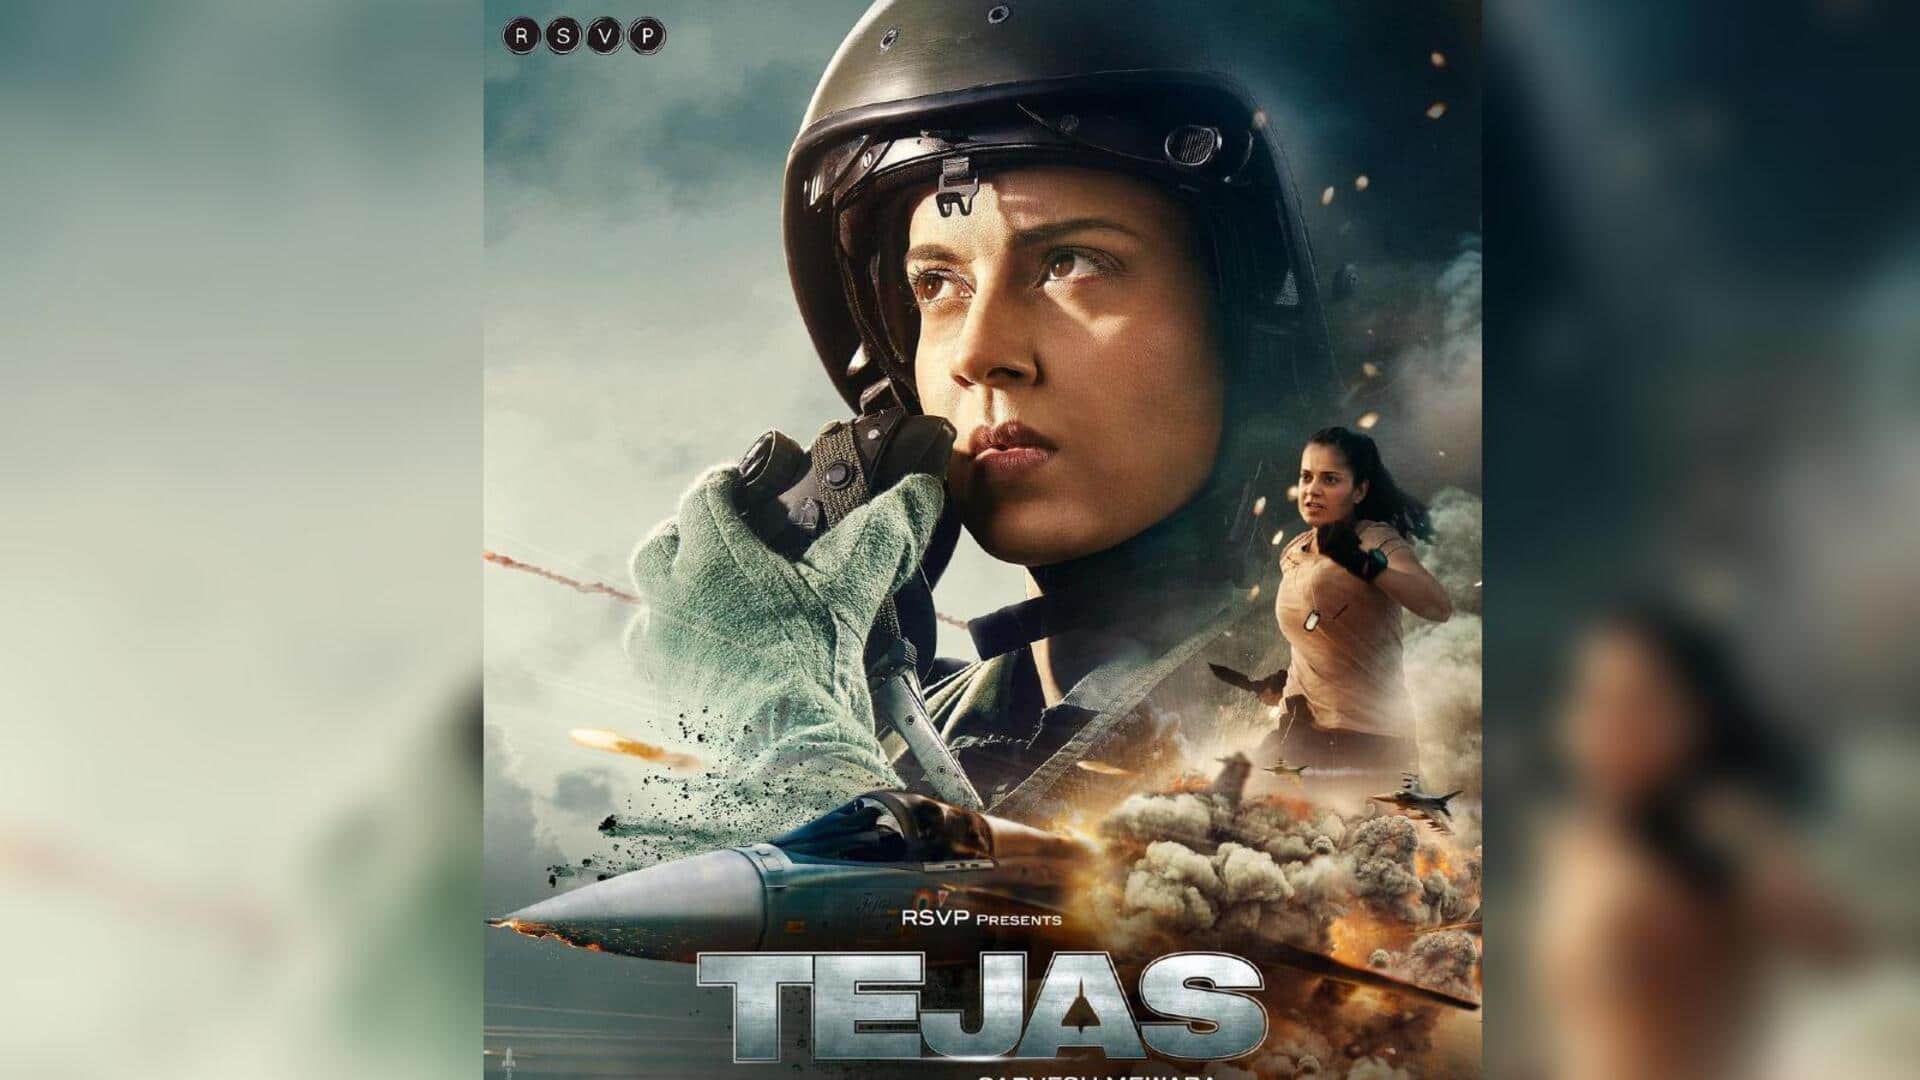 कंगना रनौत की फिल्म 'तेजस' का टीजर जारी, वायुसेना अधिकारी बन खूब जचीं अभिनेत्री